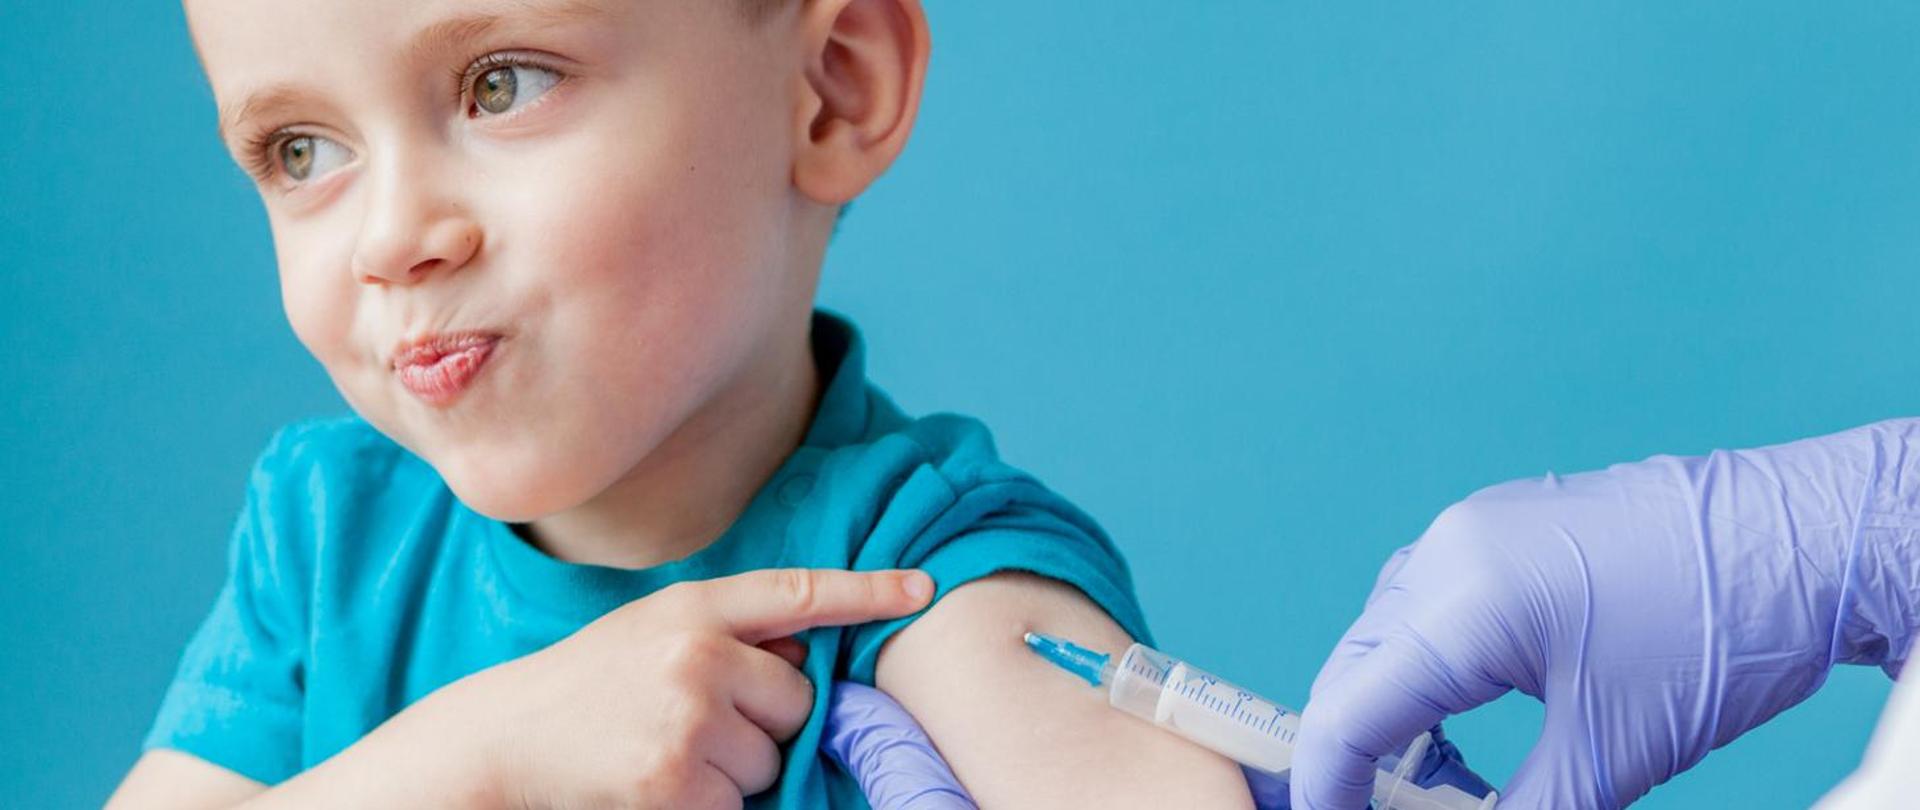 Zdjęcie przedstawia dziecko, które z uśmiechem na twarzy przyjmuje szczepienie ochronne.